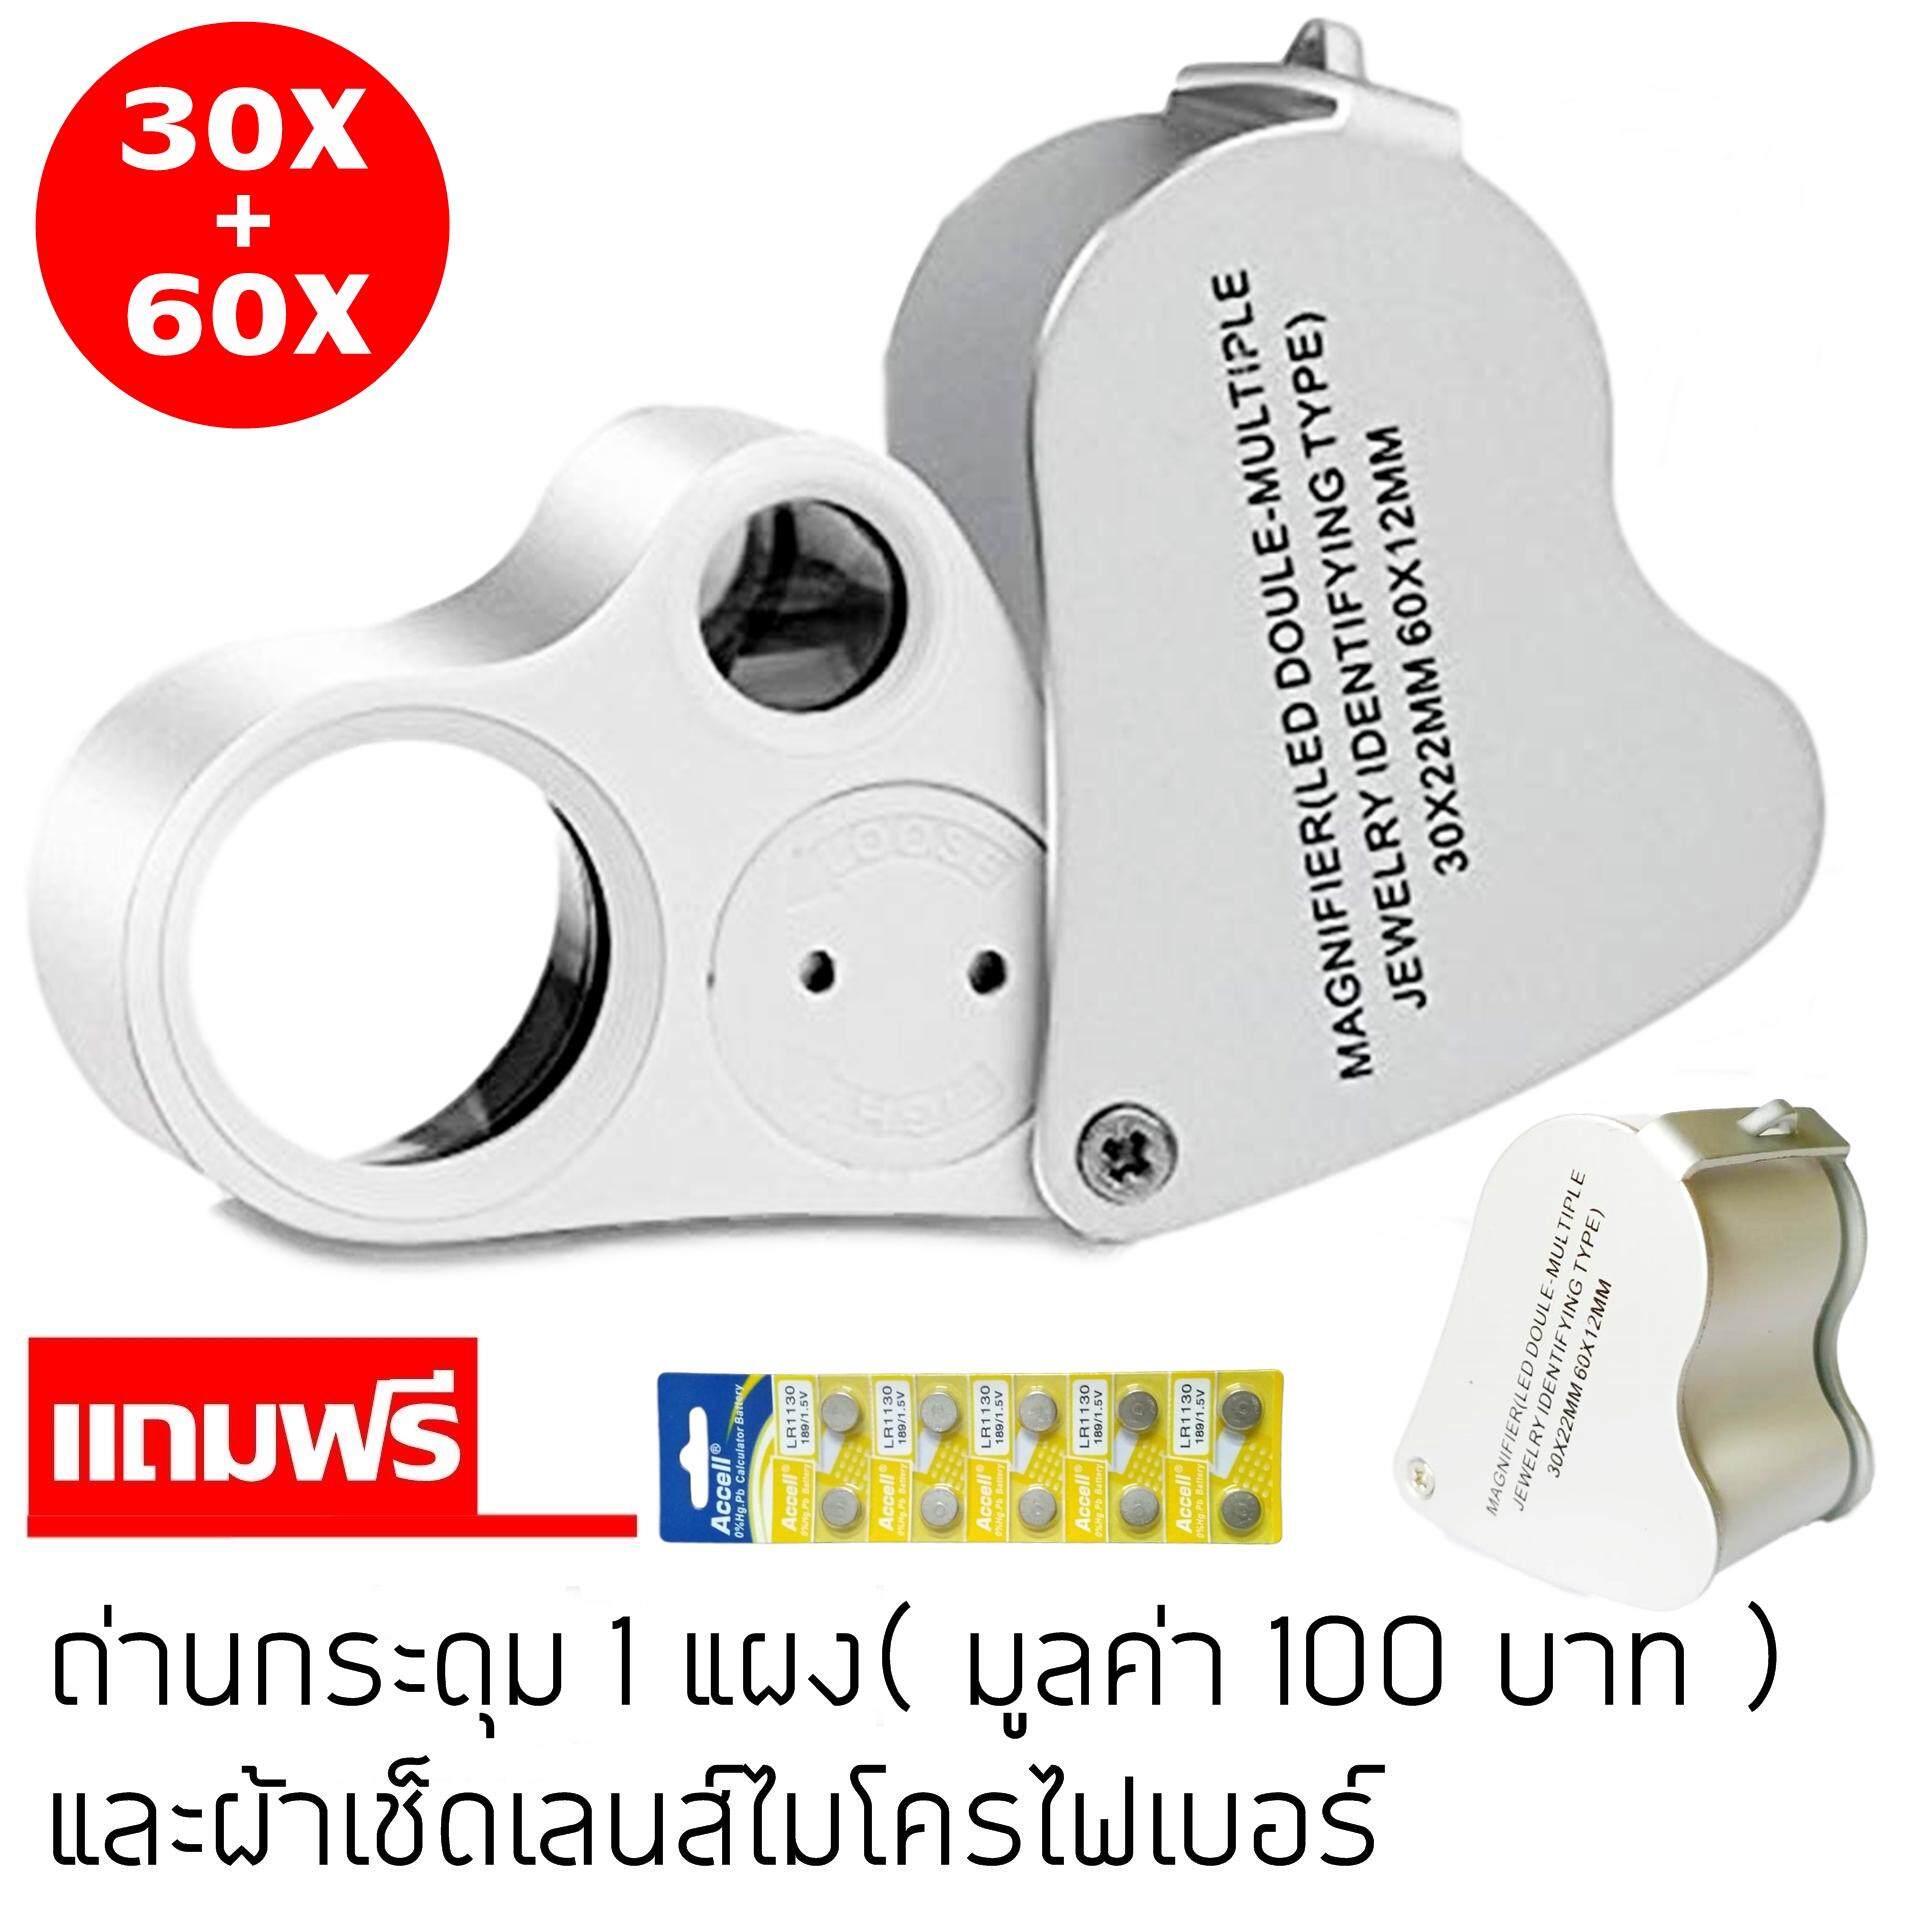 กล้องส่องพระมีไฟทางเดียว LED มีสองเลนส์ กำลังขยาย 30X และ 60X Magnifying LED 30X 60X สำหรับใช้ส่องพระเครื่อง อัญมณี กล้องส่องพระ แว่นขยาย แว่นส่องพระ  กล้องขยาย กล้องส่องจิวเวอรี่ กล้องส่องเพชร